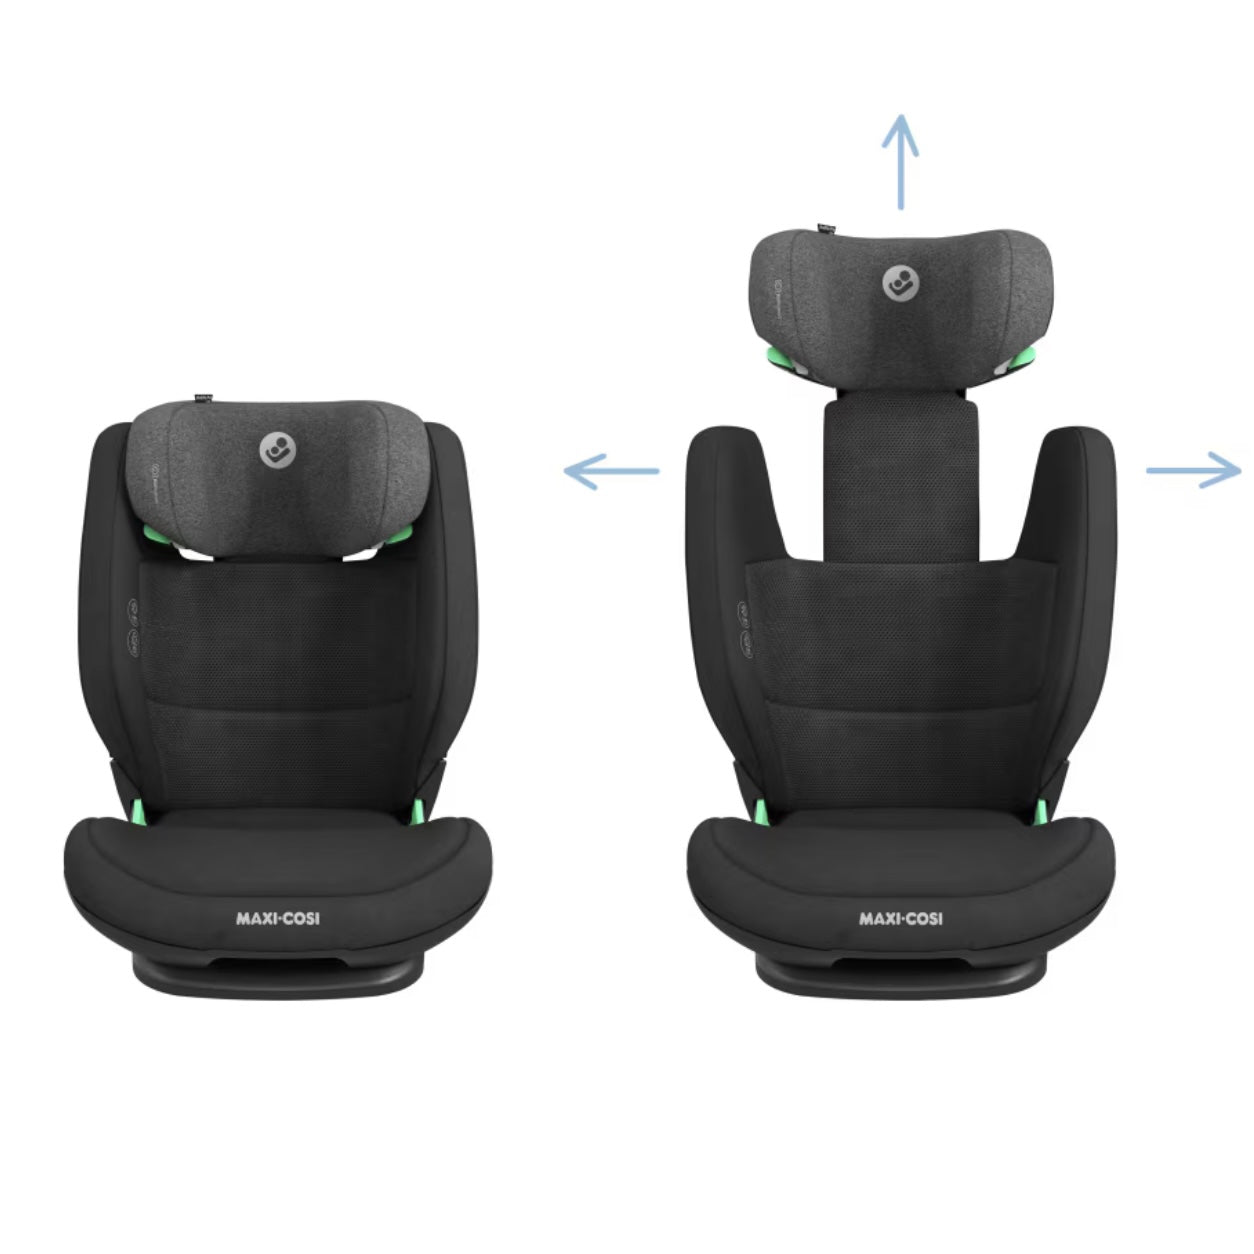 RodiFix Pro 2 i-Size Child Car Seat